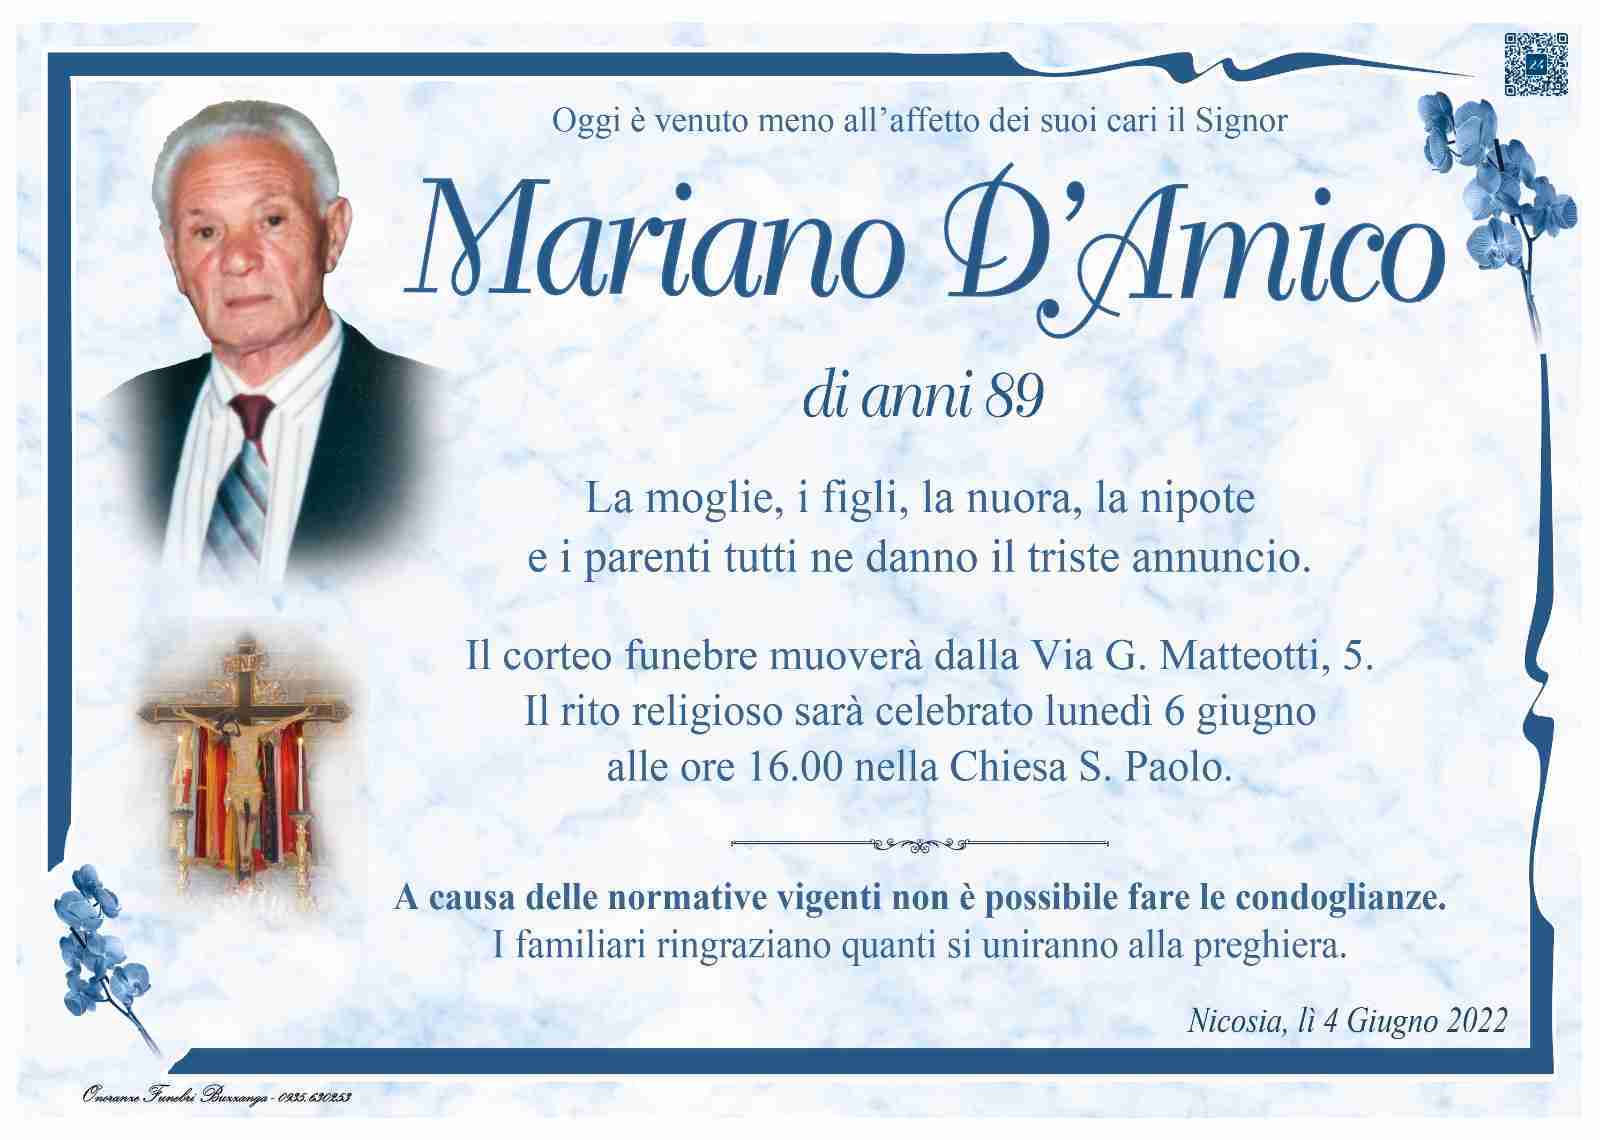 Mariano D'Amico